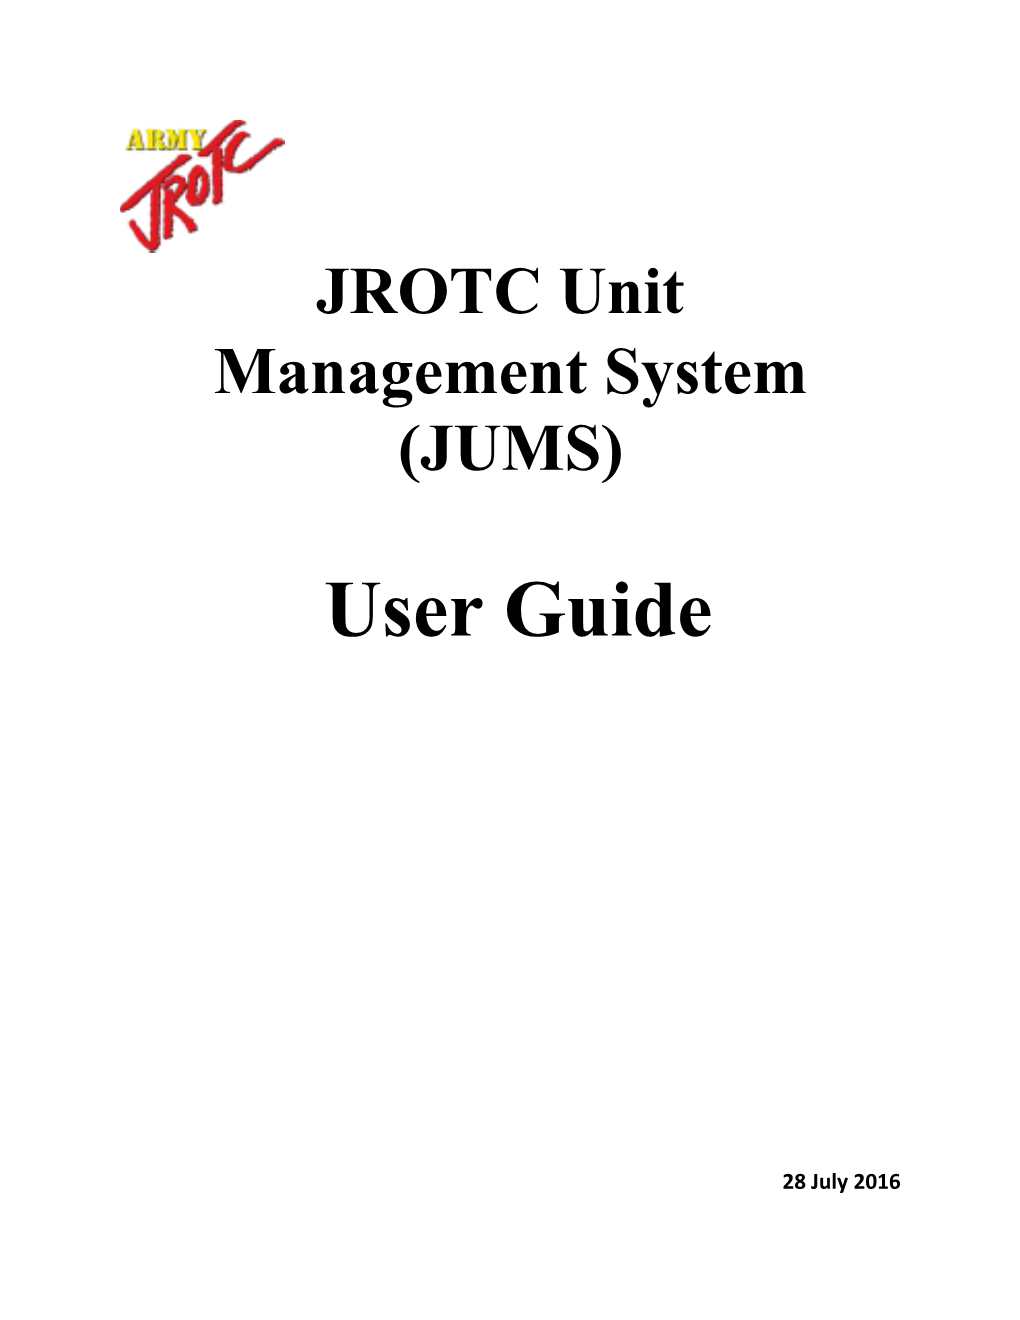 JROTC Unit Management System